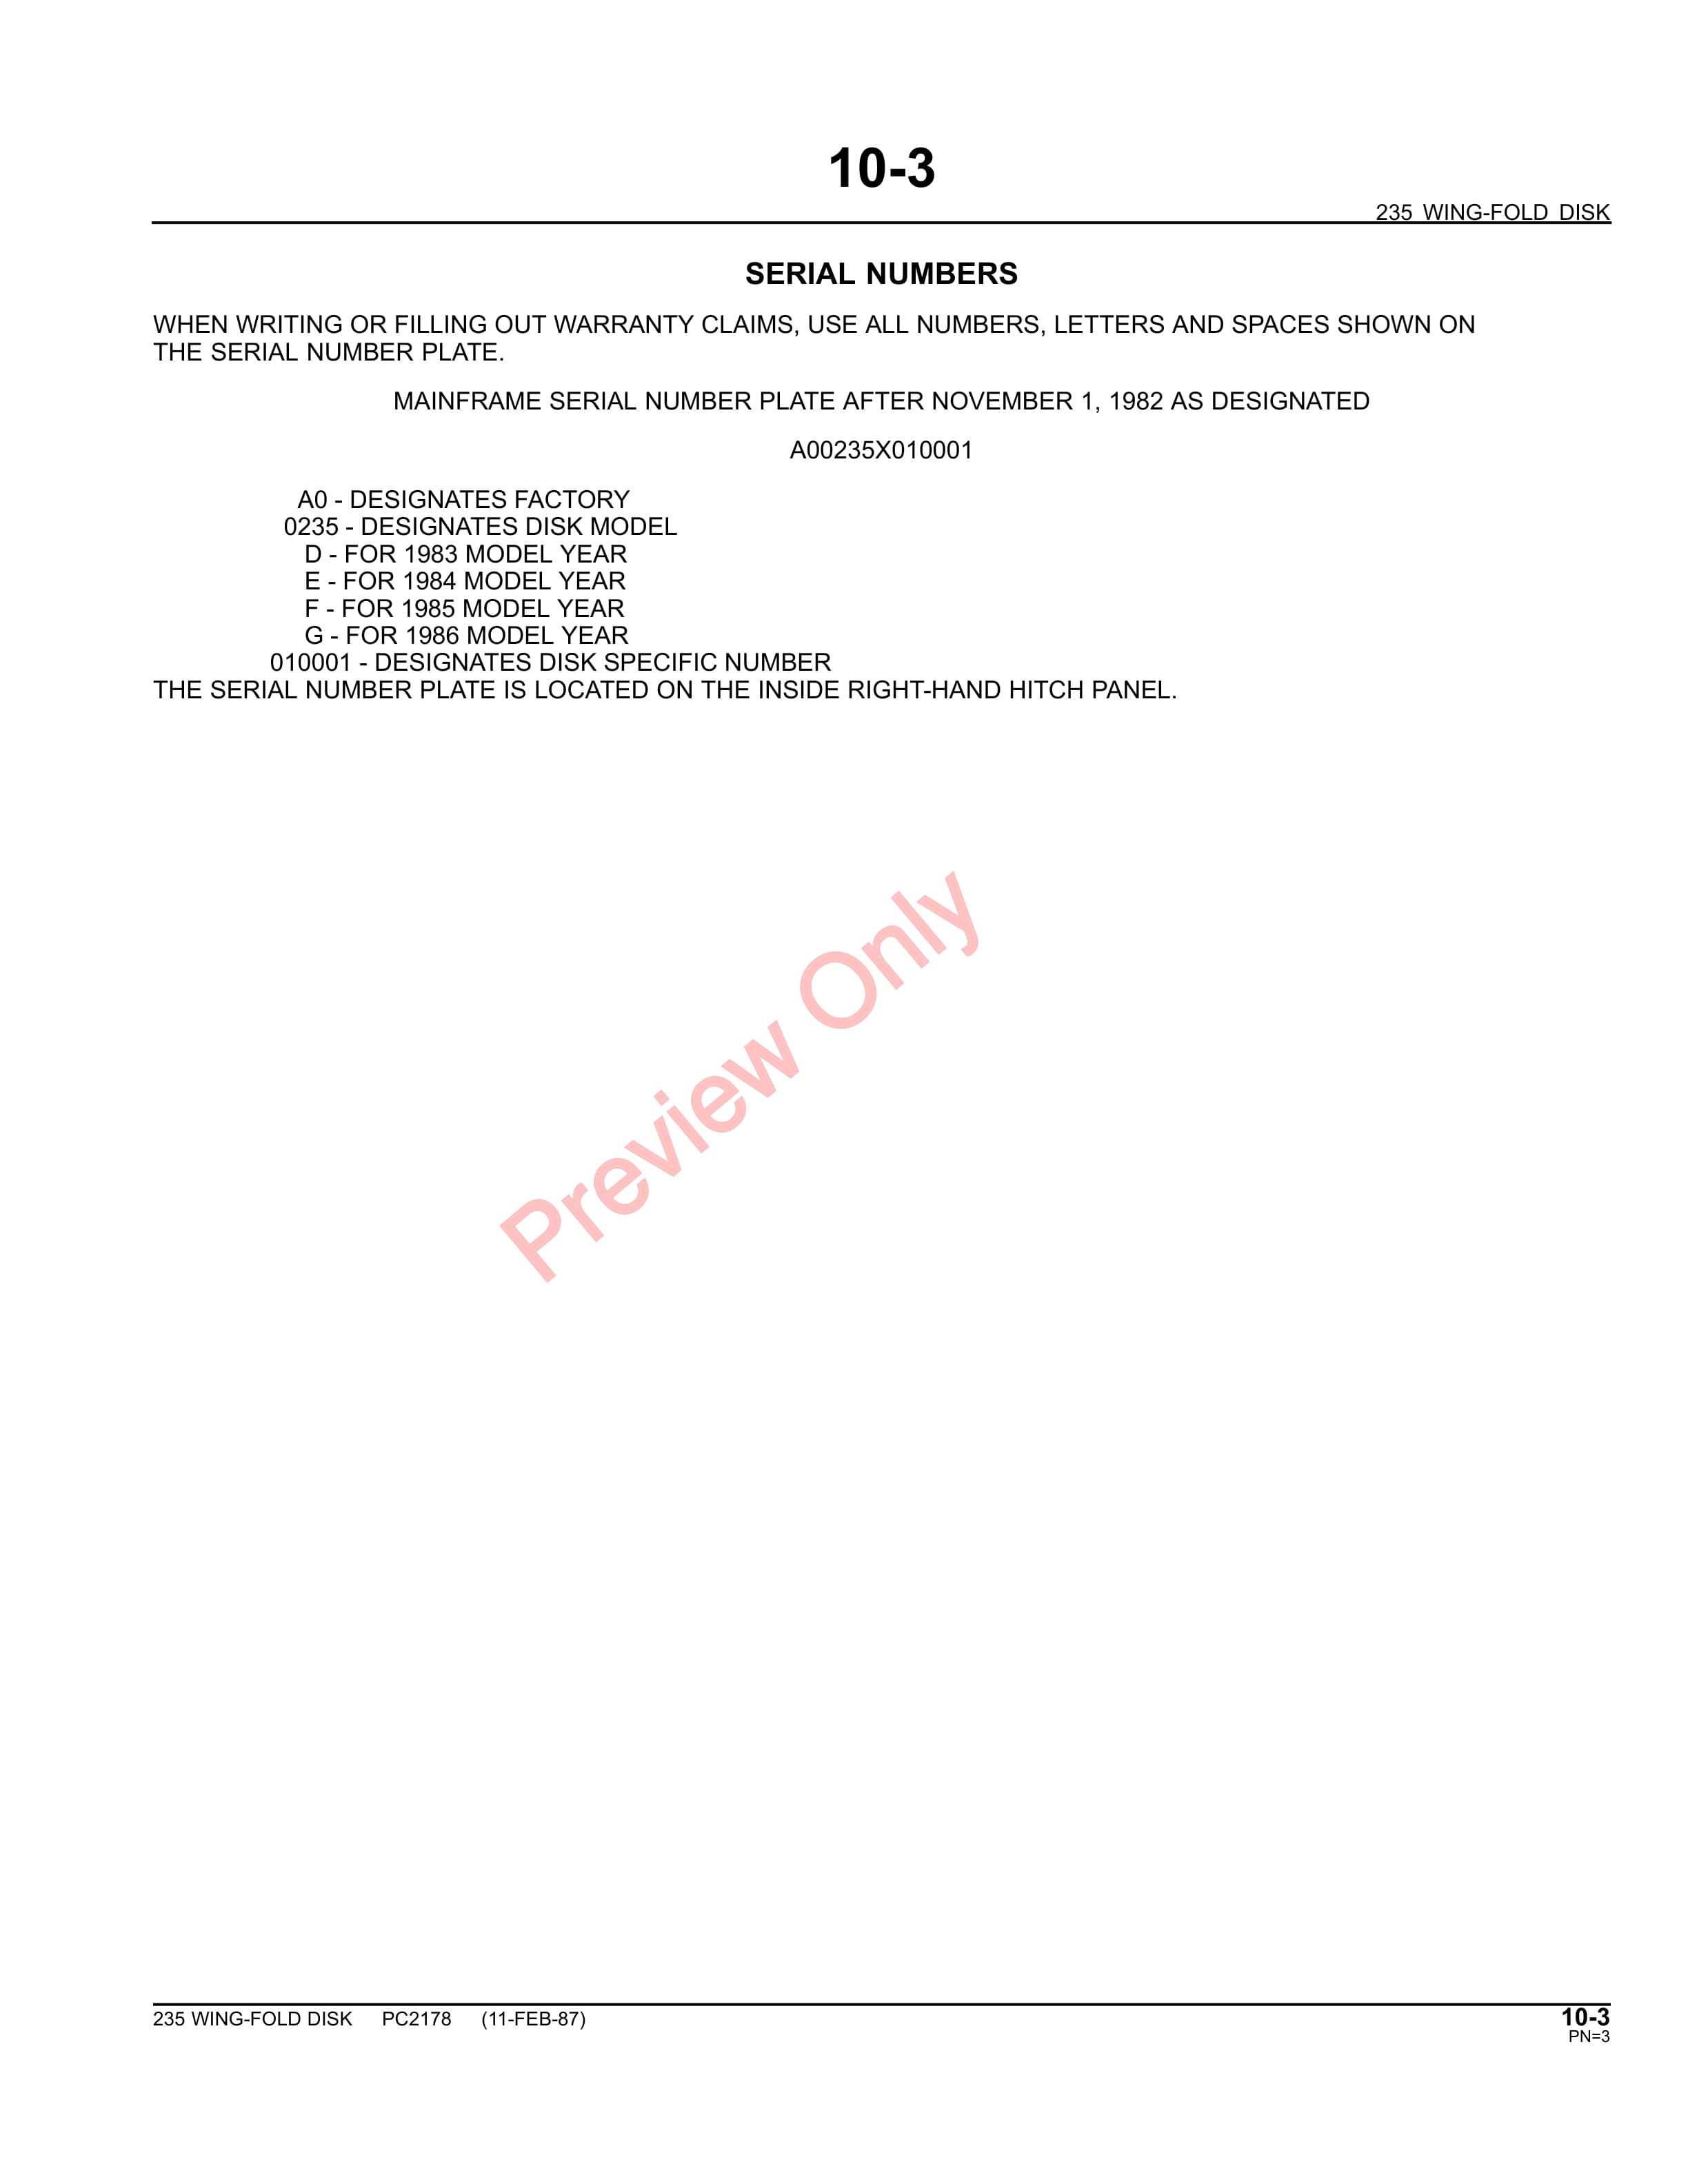 John Deere 235 Wing-Fold Disk Parts Catalog PC2178 31MAY11-5